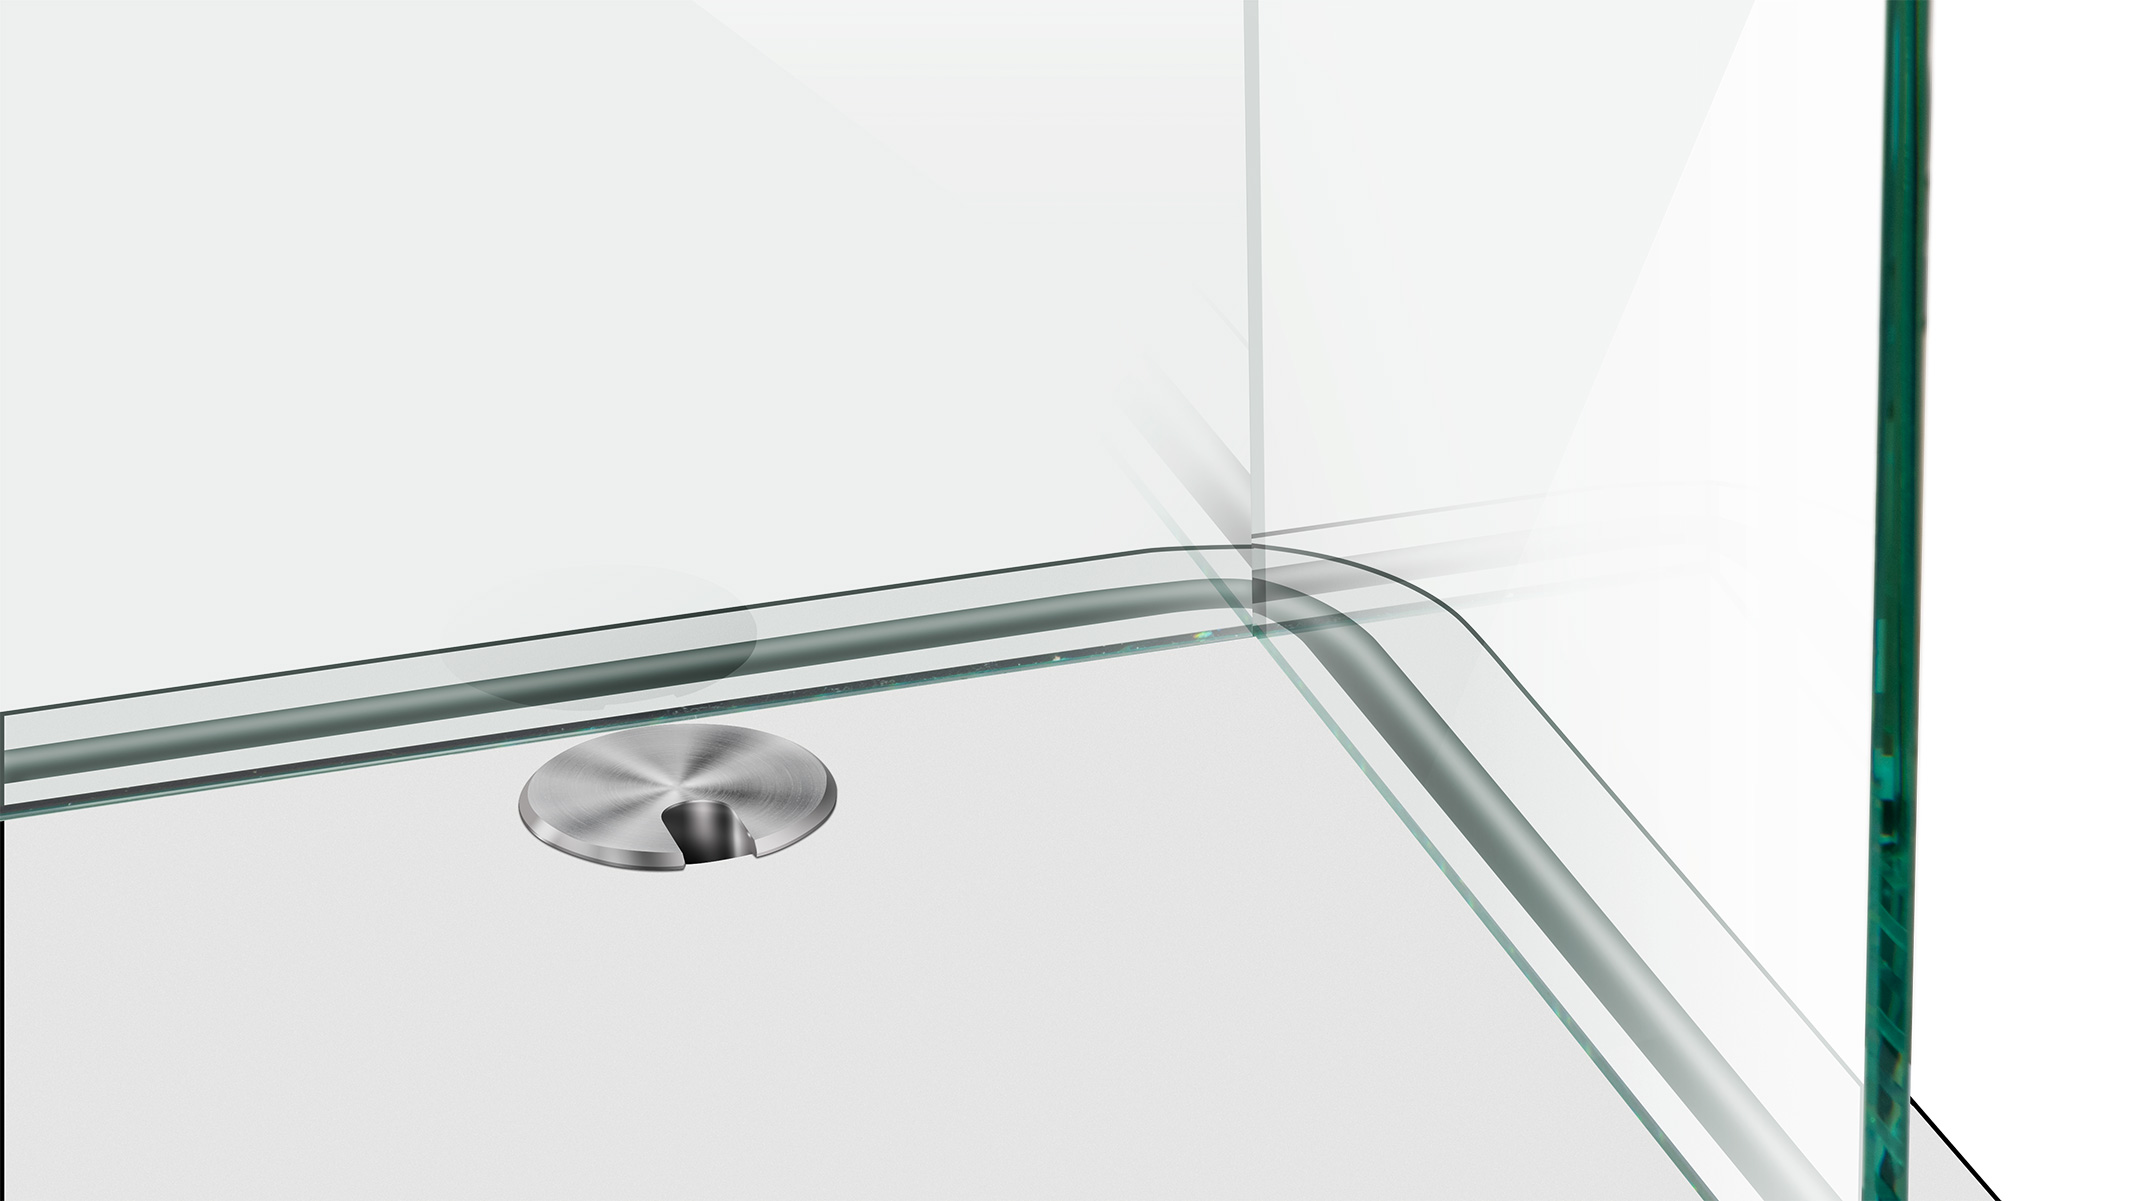 ESG Floatglas in U-Form, Höhe 30 cm, Stärke 6 mm, Kanten auf Gehrung UV verklebt, Kanten poliert,
Sonderausstattung für Ergolift Evolution 140 cm